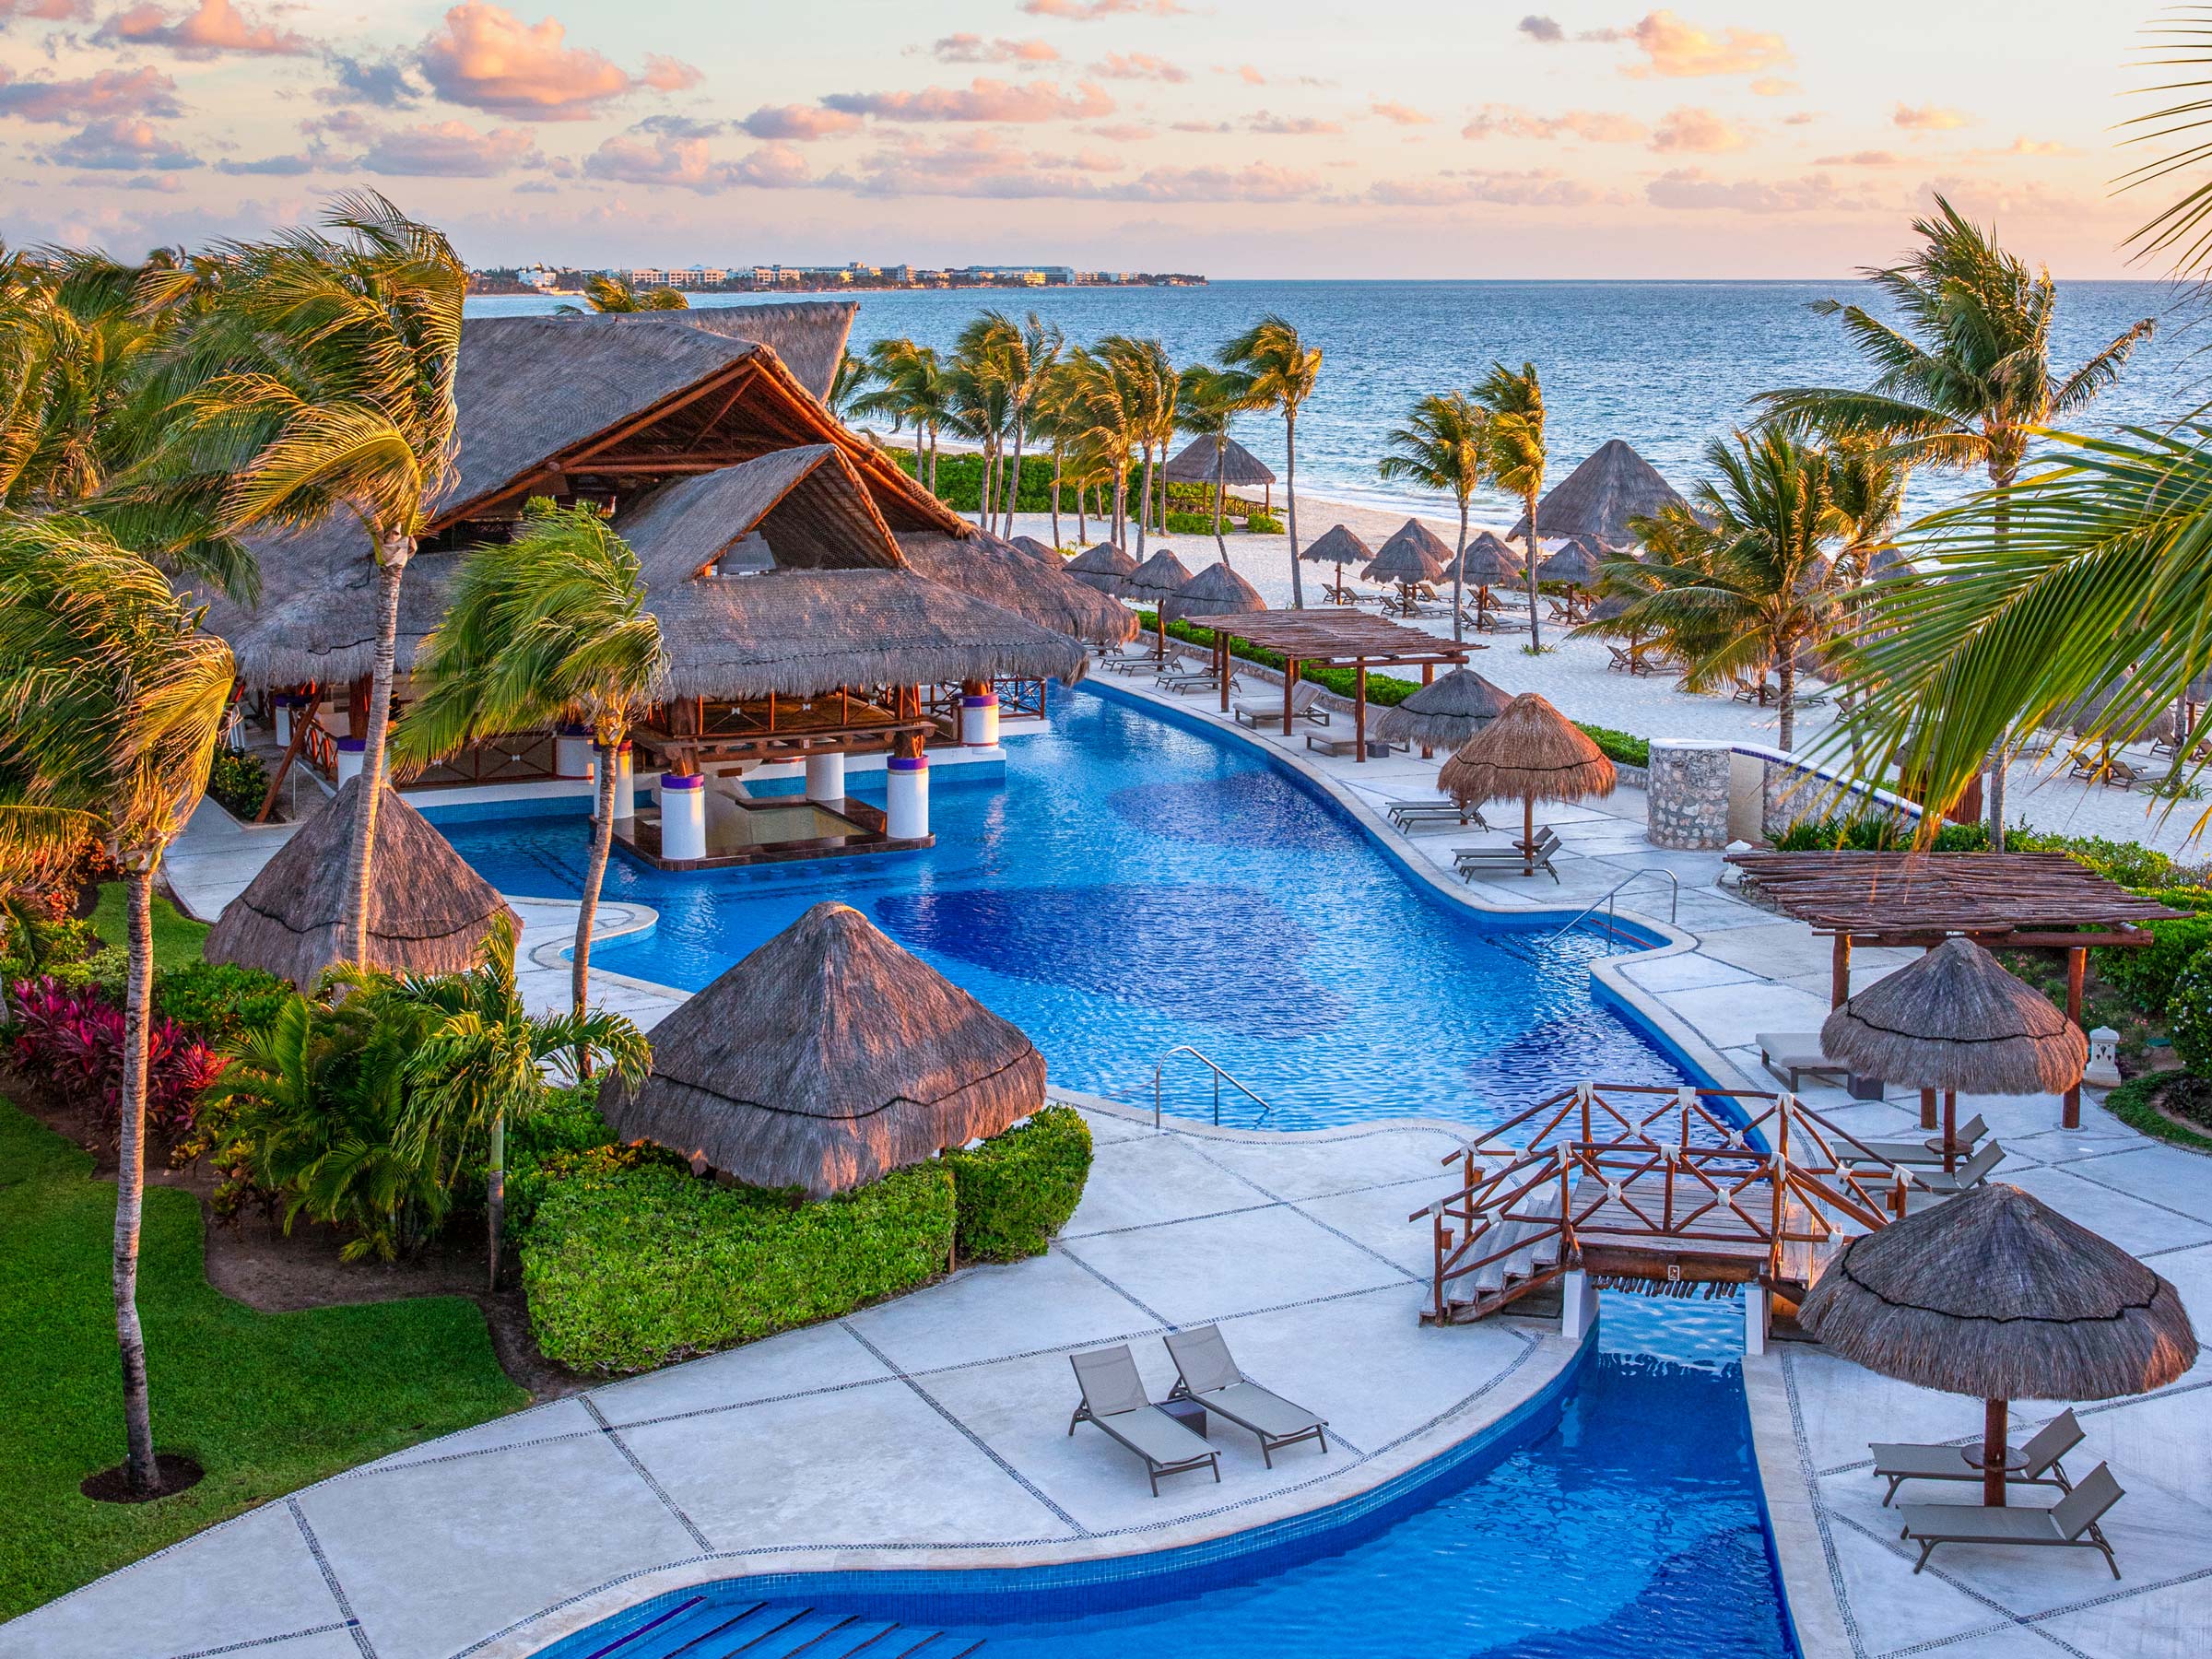 Séjournez dans l’un de nos centres de villégiature de luxe dans les Caraïbes mexicaines